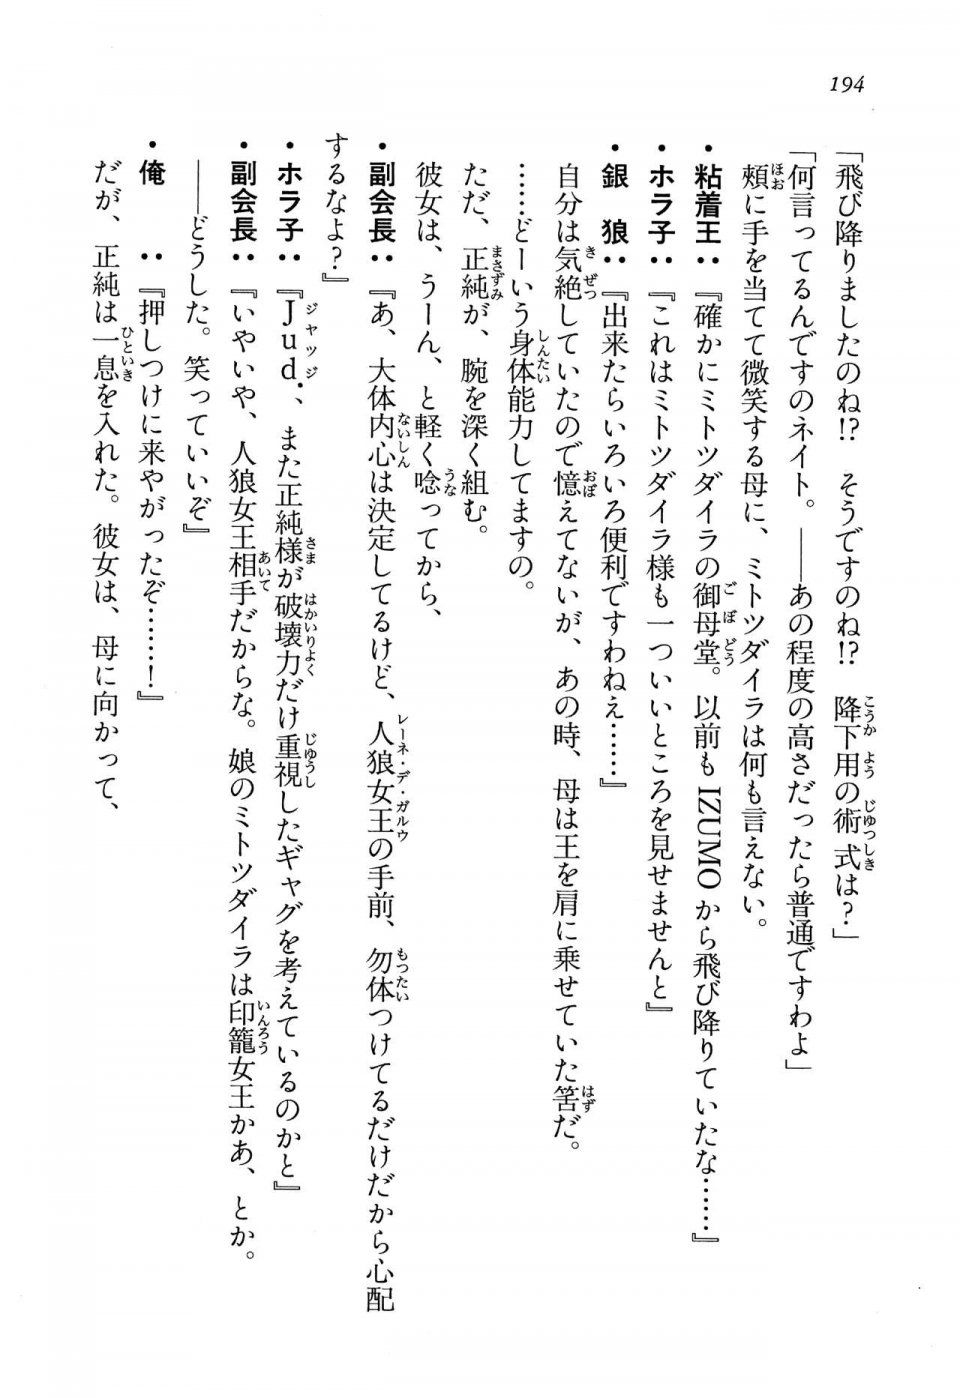 Kyoukai Senjou no Horizon LN Vol 13(6A) - Photo #194